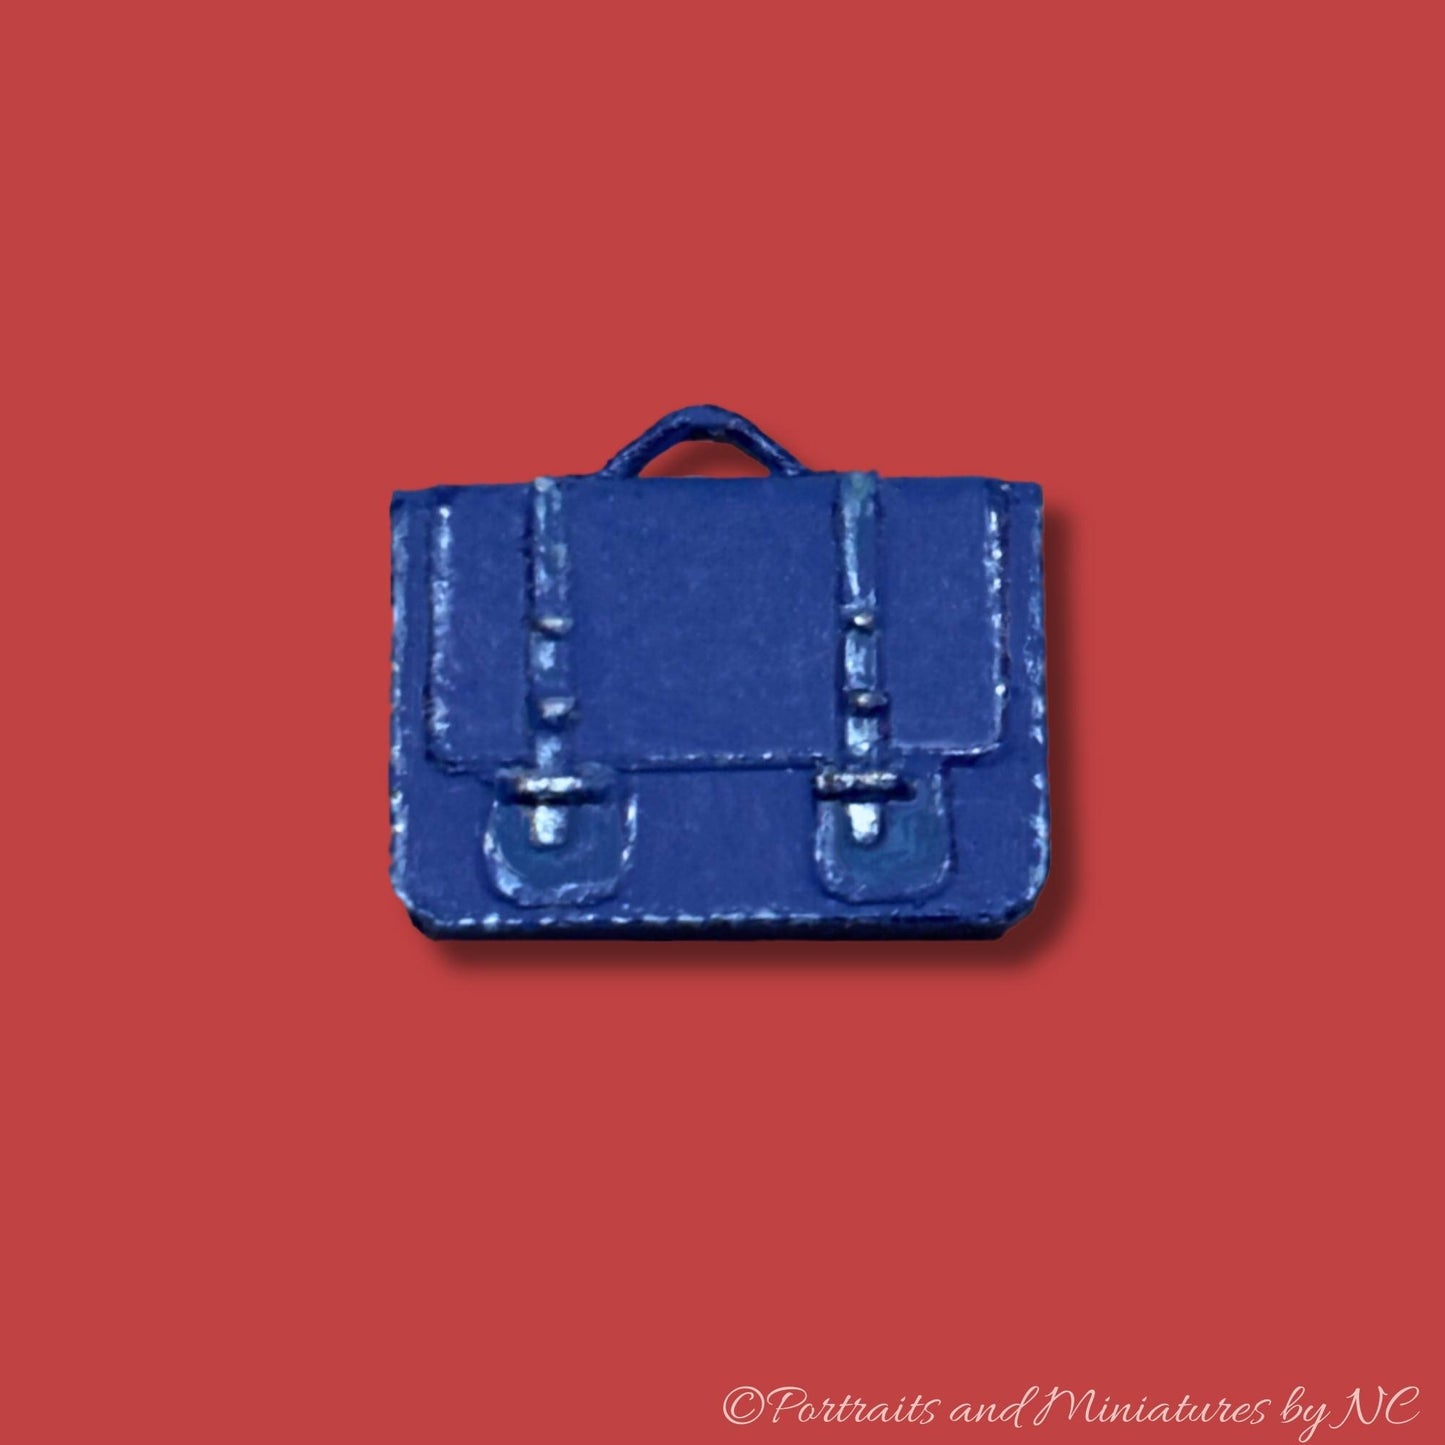 Miniature Briefcase blue 1/12 scale